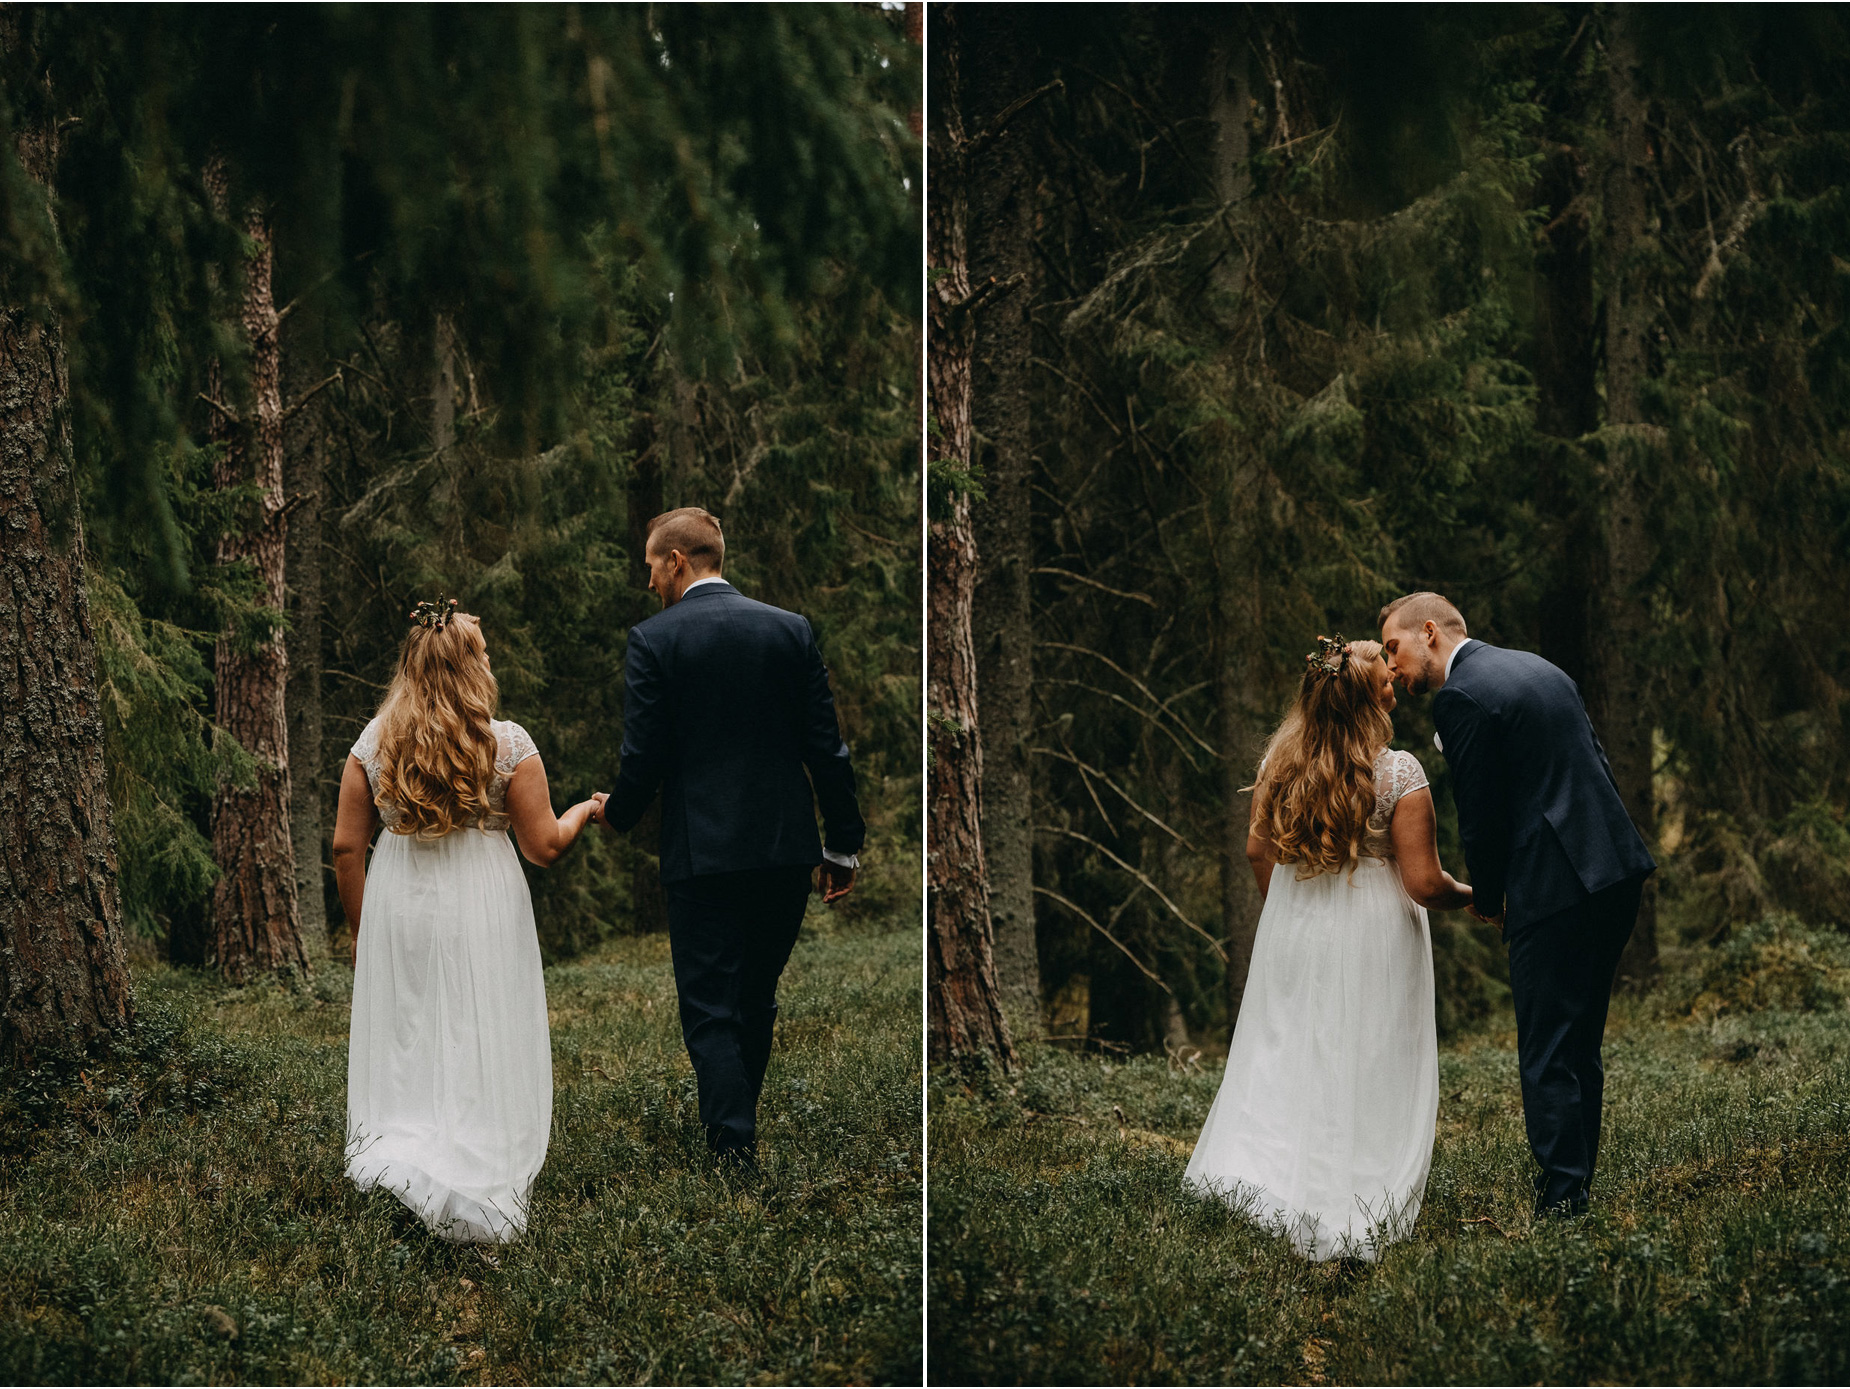 Bröllopsfotografering i småländsk skog med inspiration av John Bauer